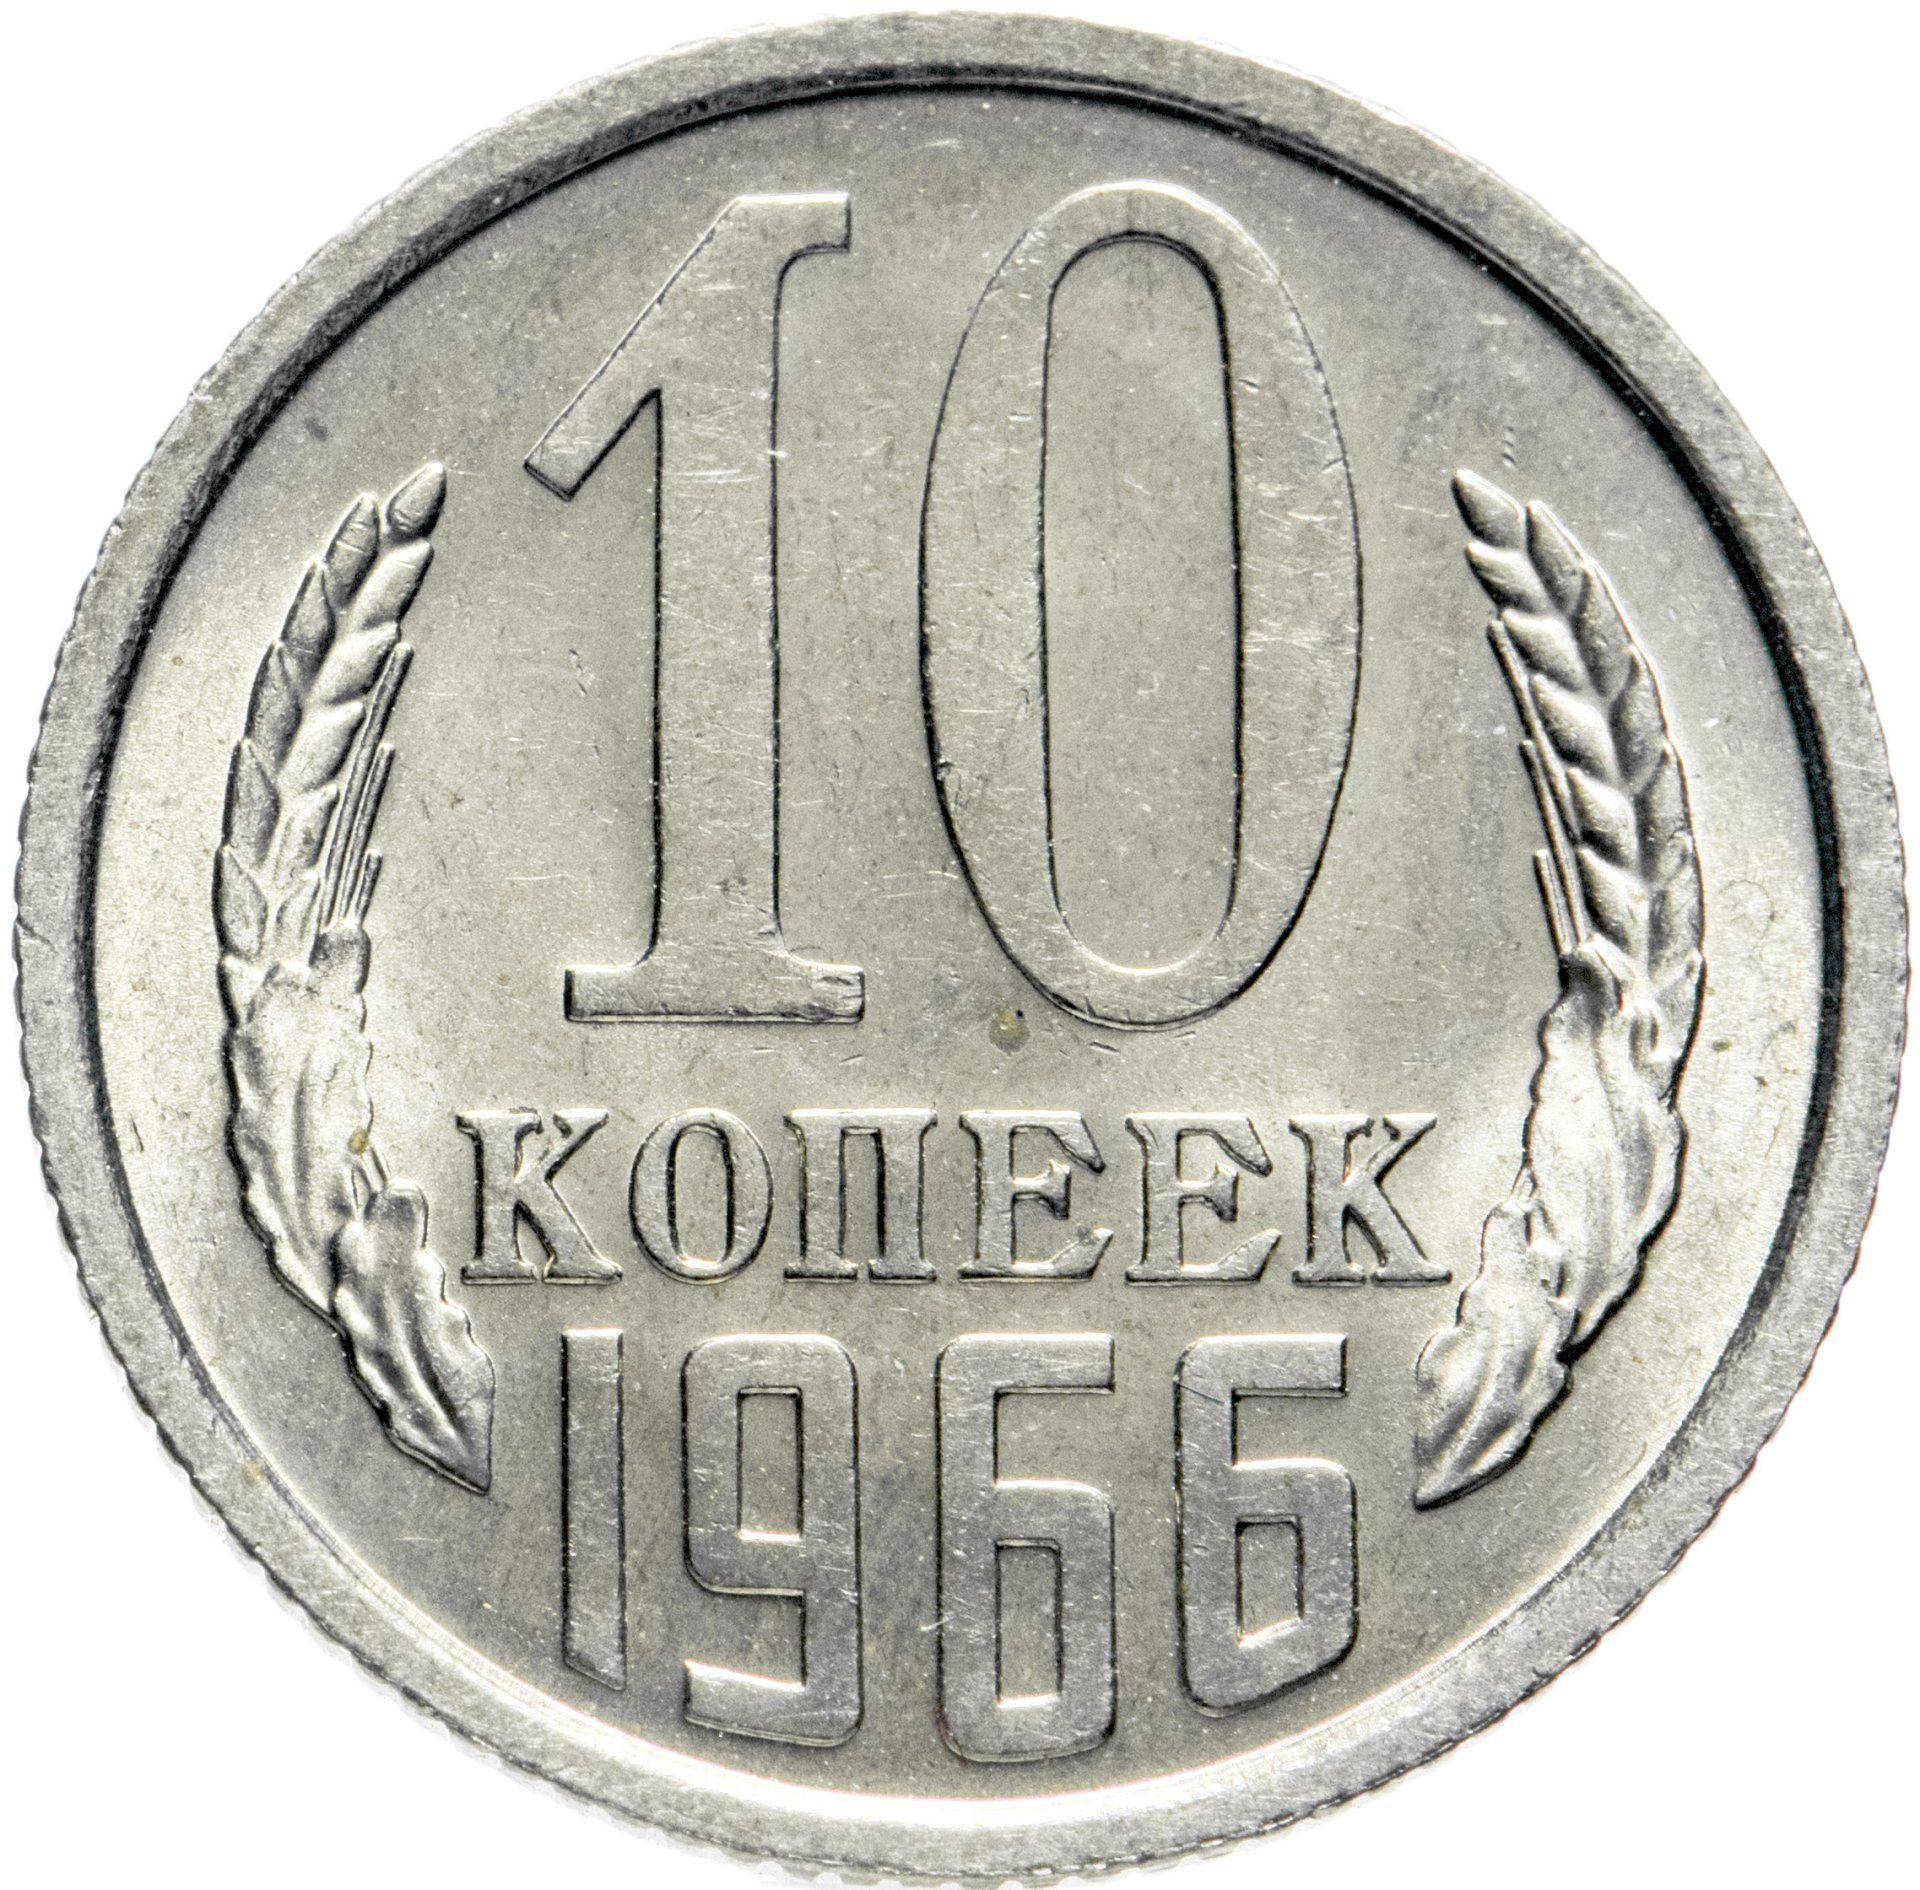 50 рублей 10 копеек. 10 Копеек в Турции на рубли. Без остей. Стоимость монет номиналом 10 и 50 копеек. 20 Копеек 1966 год цена.